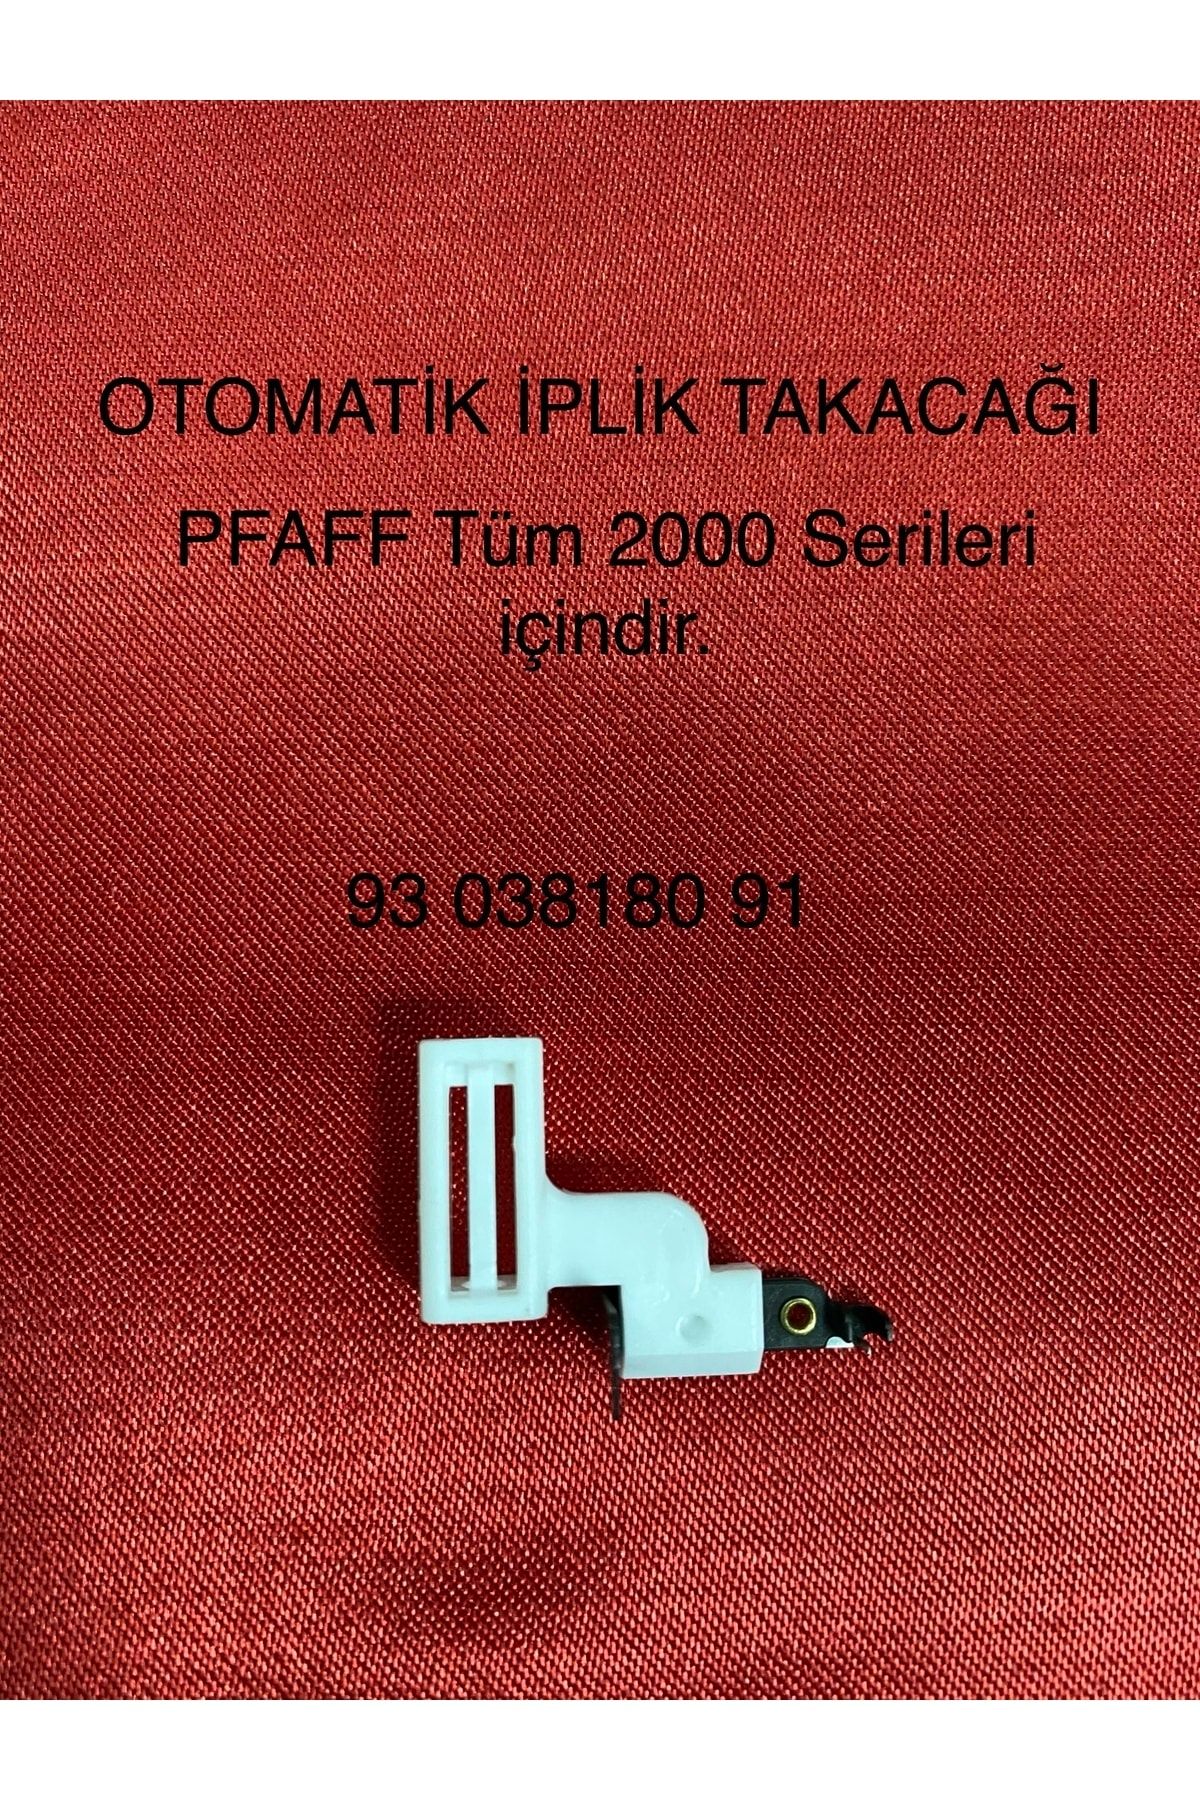 Pfaff Otomatik Iplik Takacağı -93 038180 91-